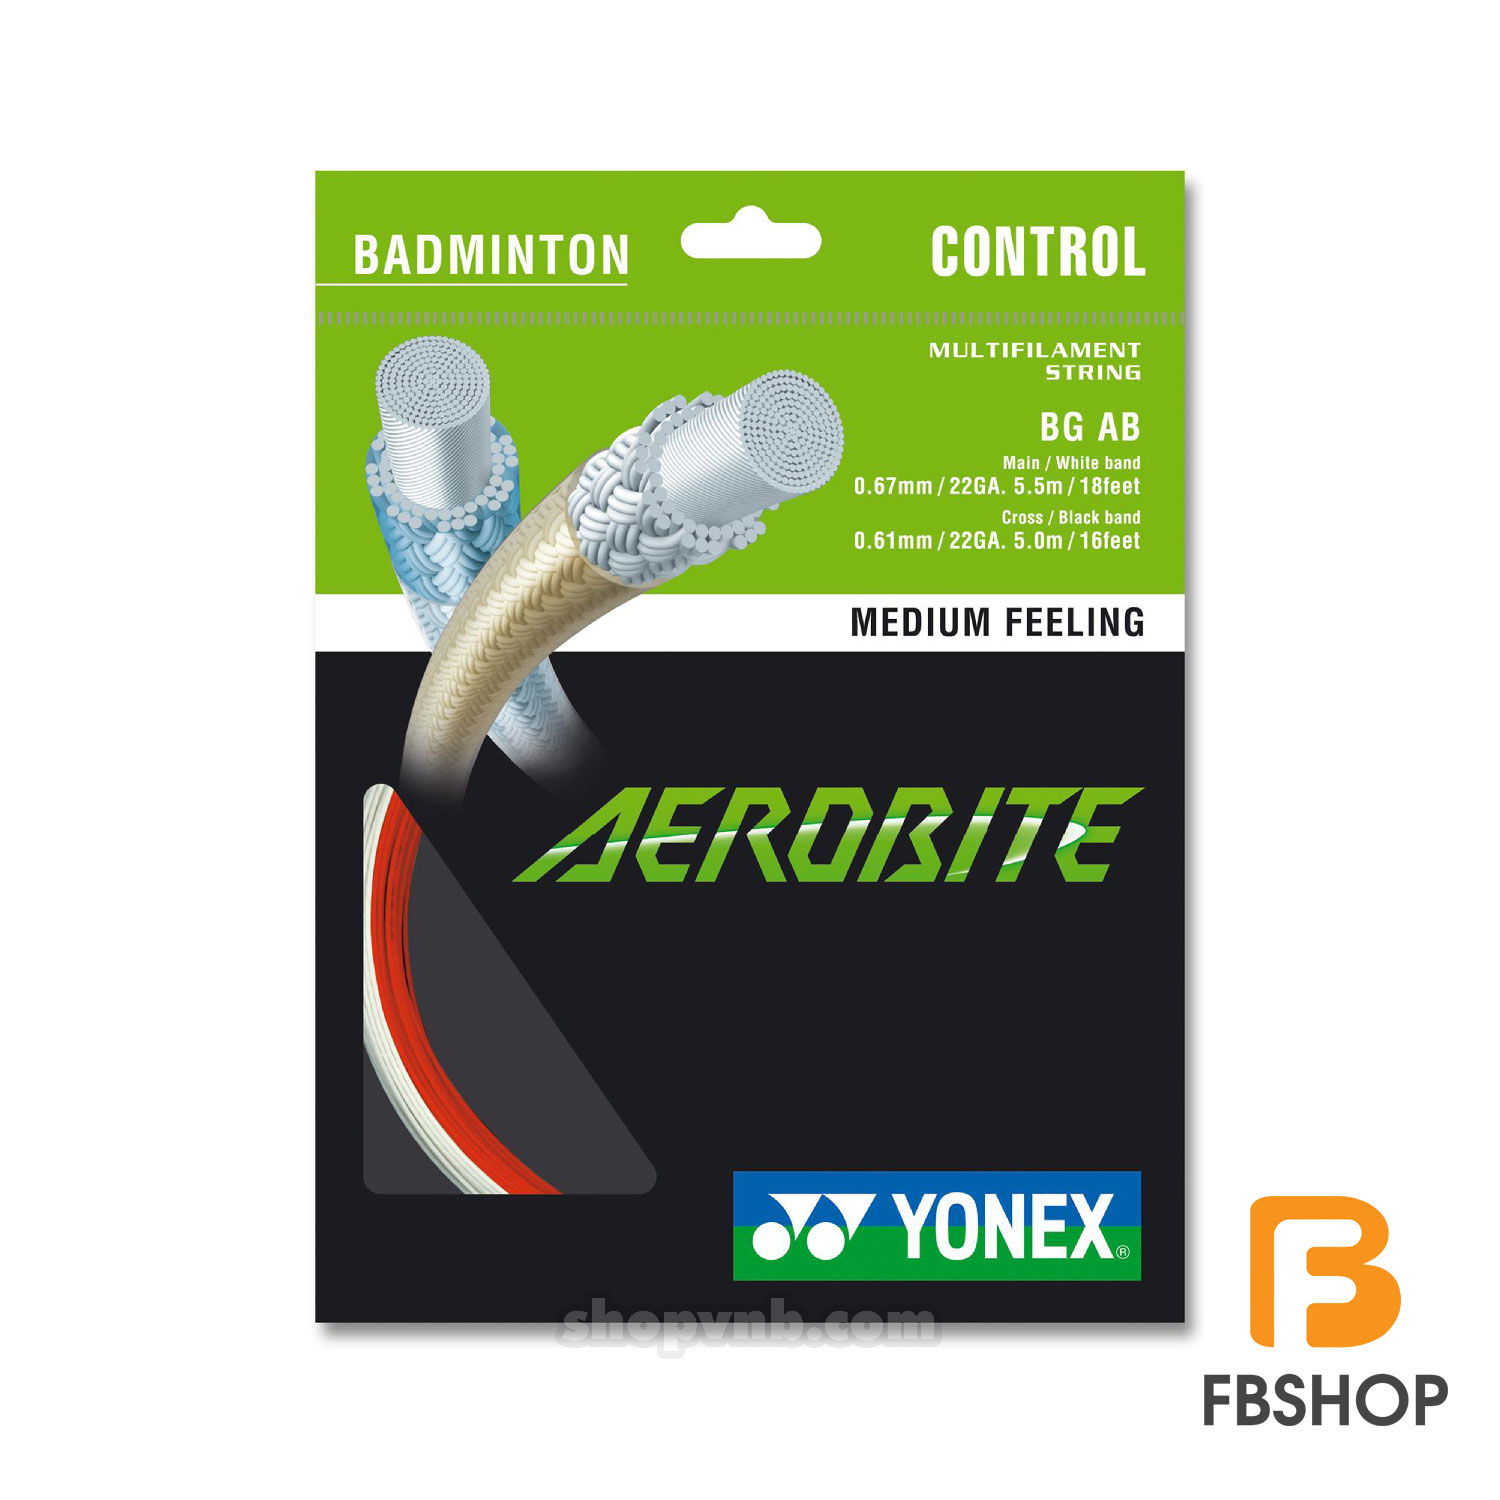 Cước cầu lông Yonex Aerobite